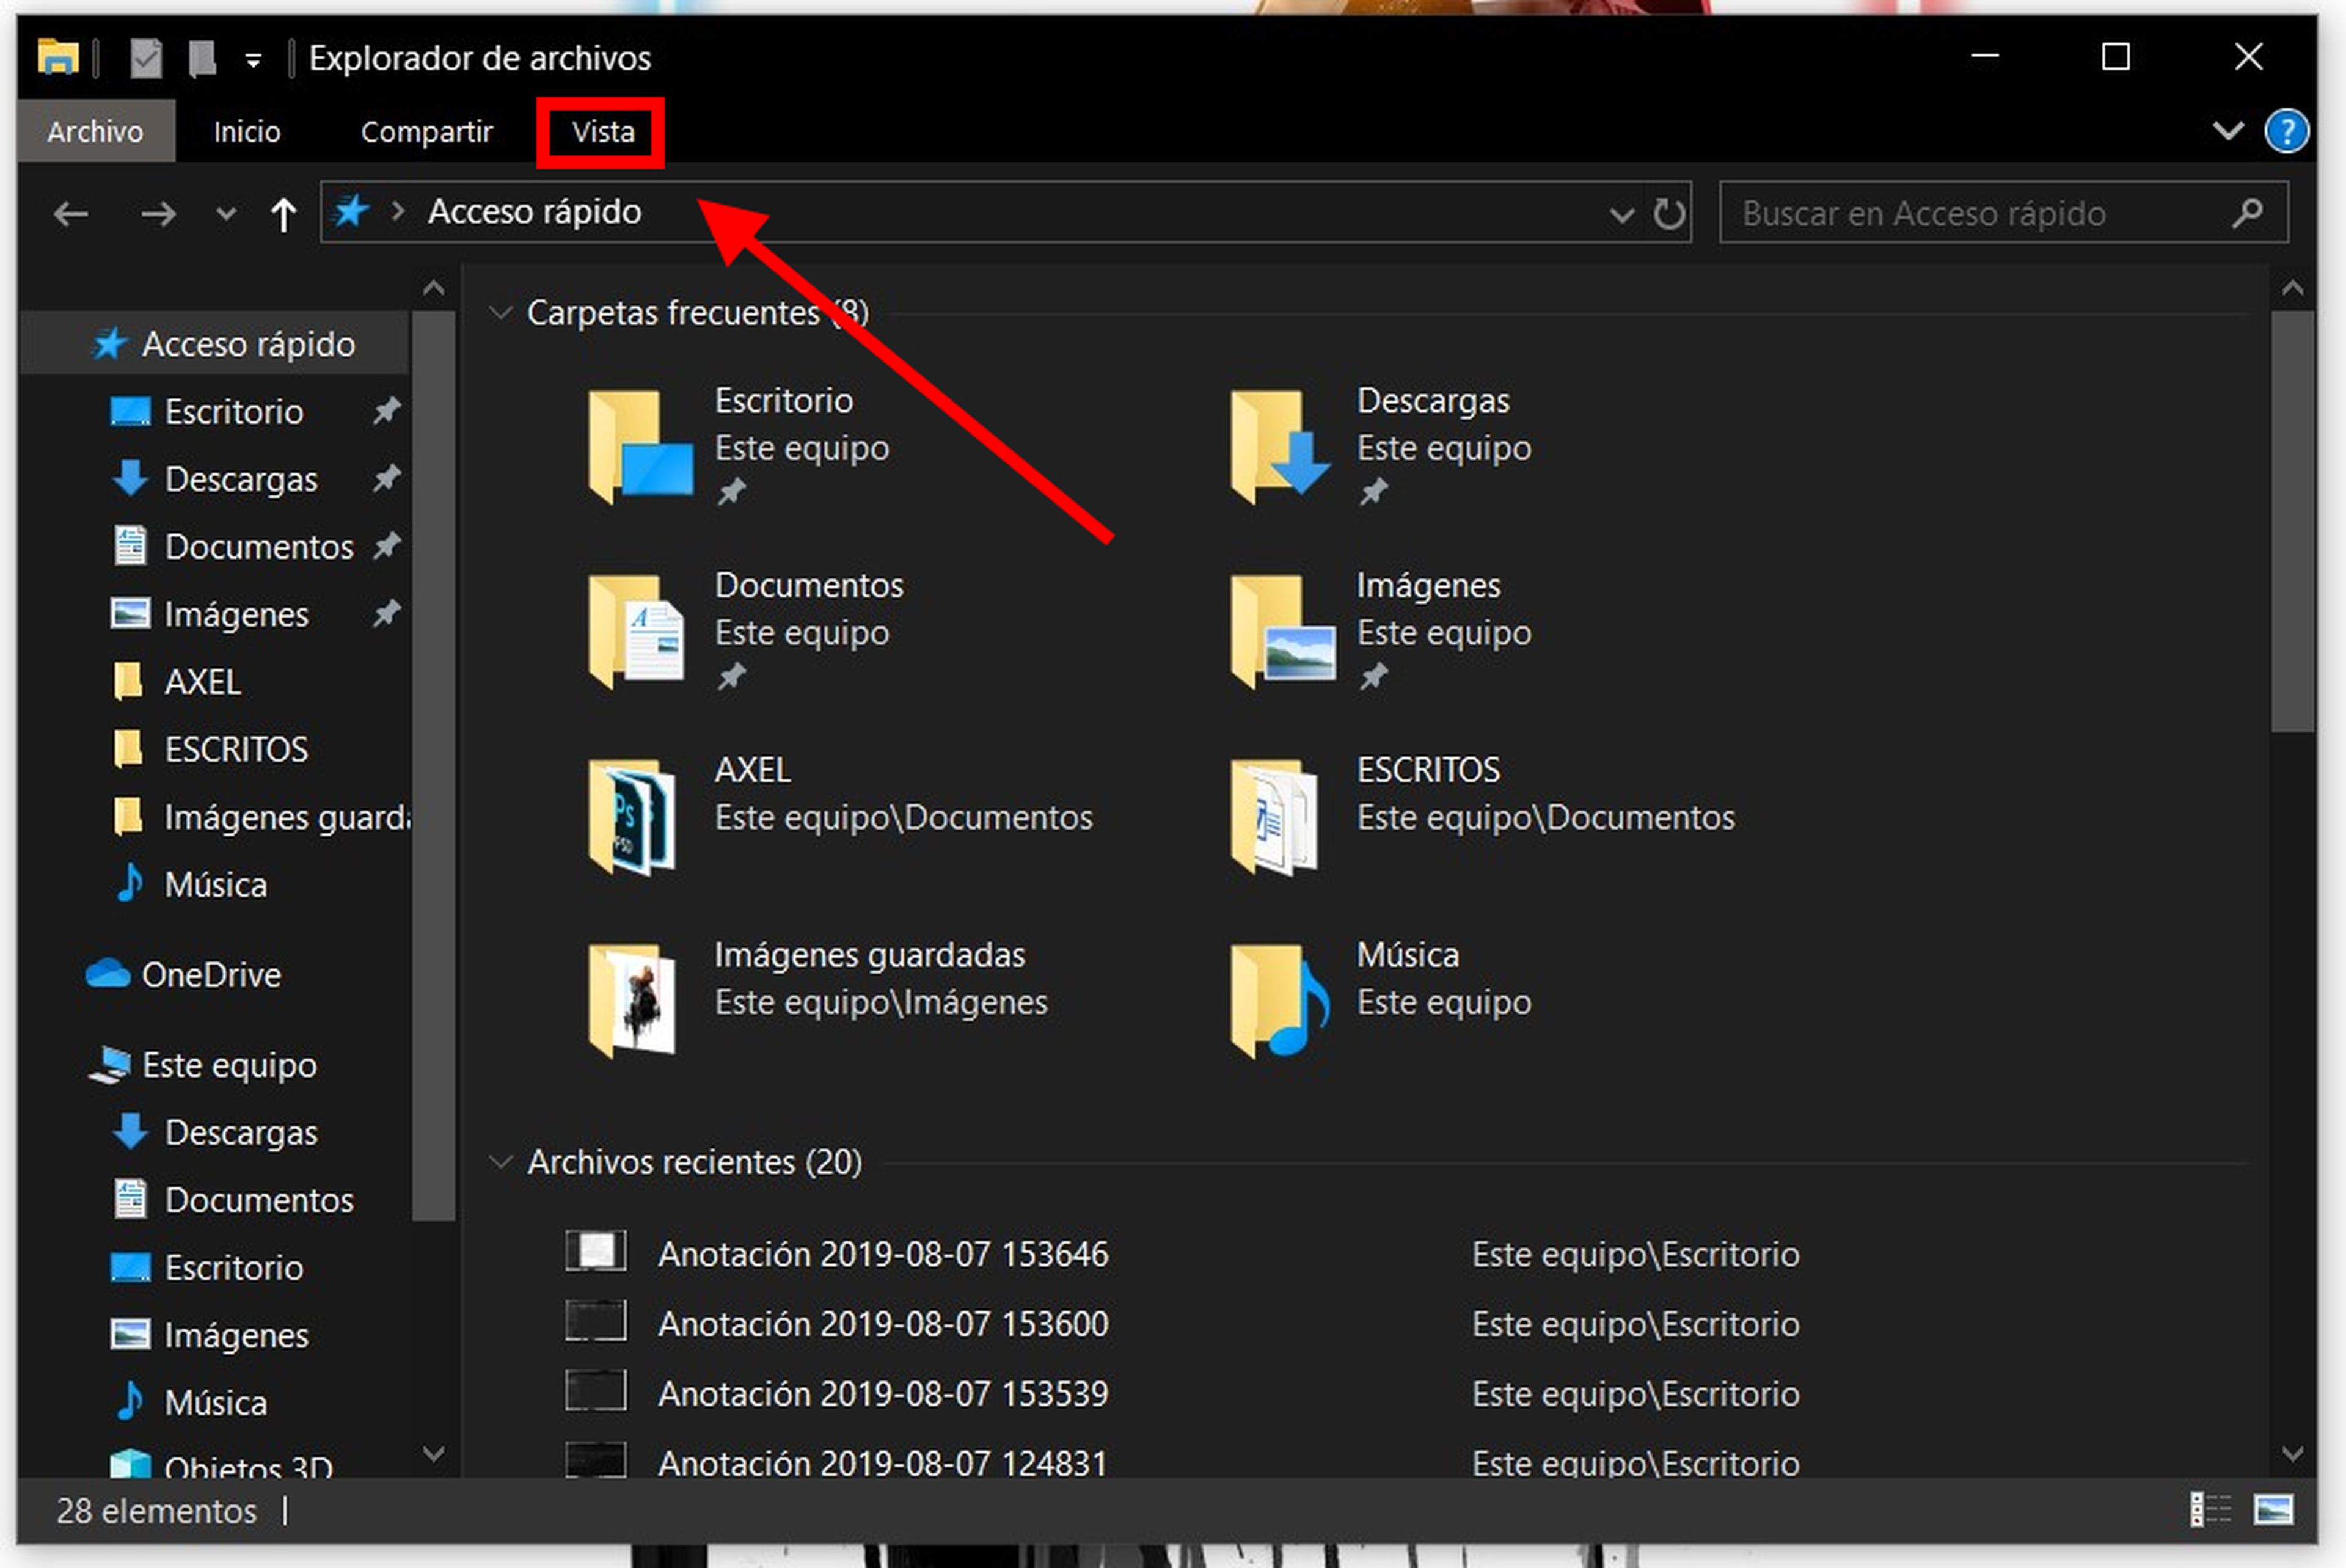 Cómo ocultar la carpeta archivos recientes en Windows 10